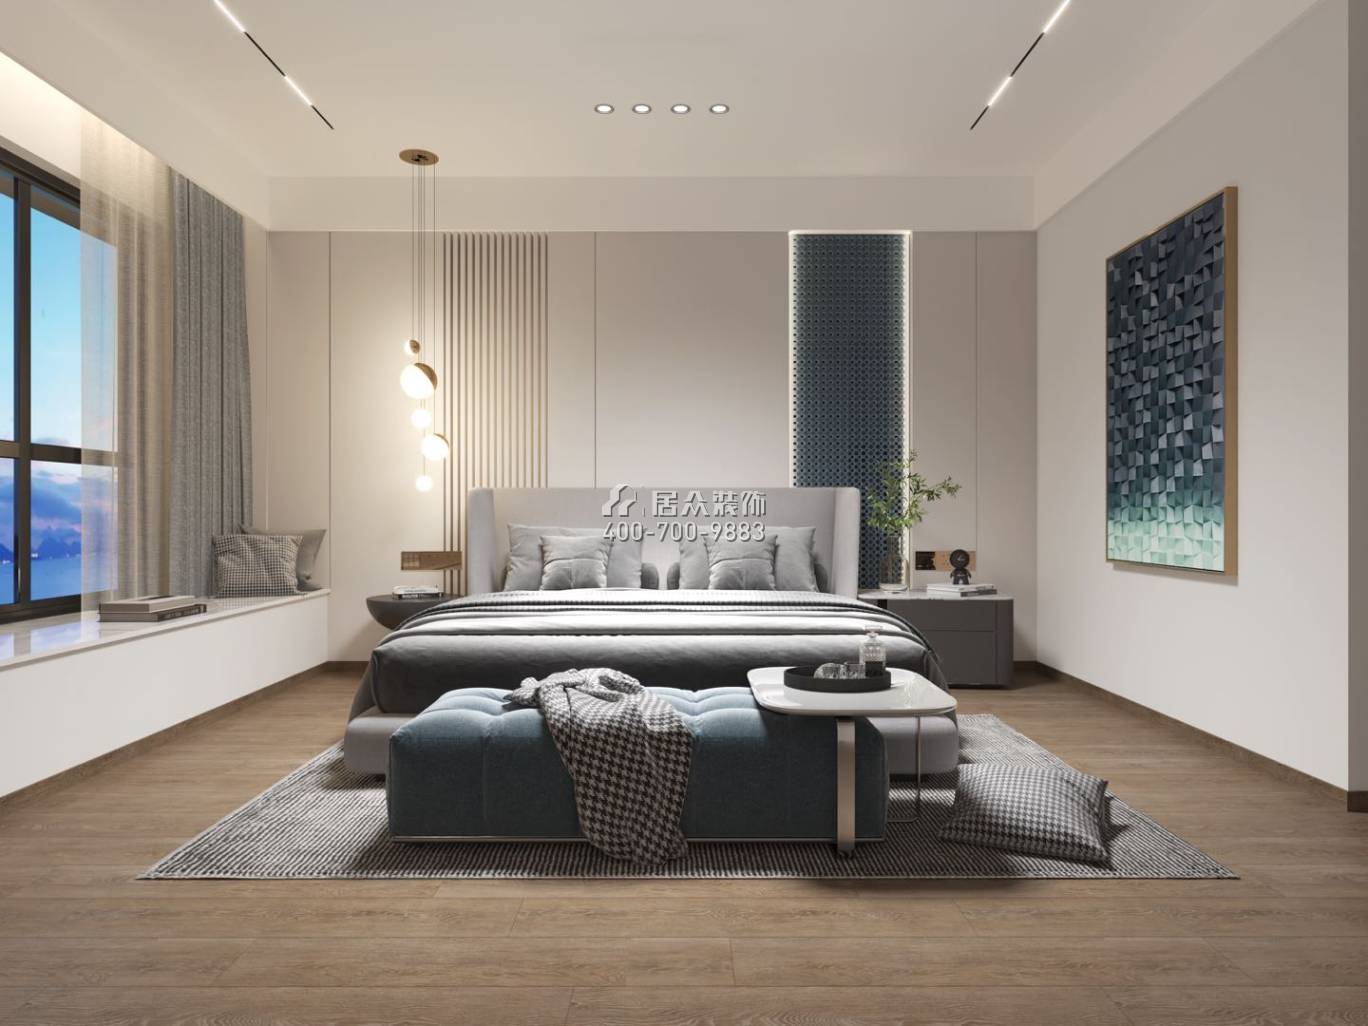 中信红树湾-三期638平方米现代简约风格复式户型卧室装修效果图